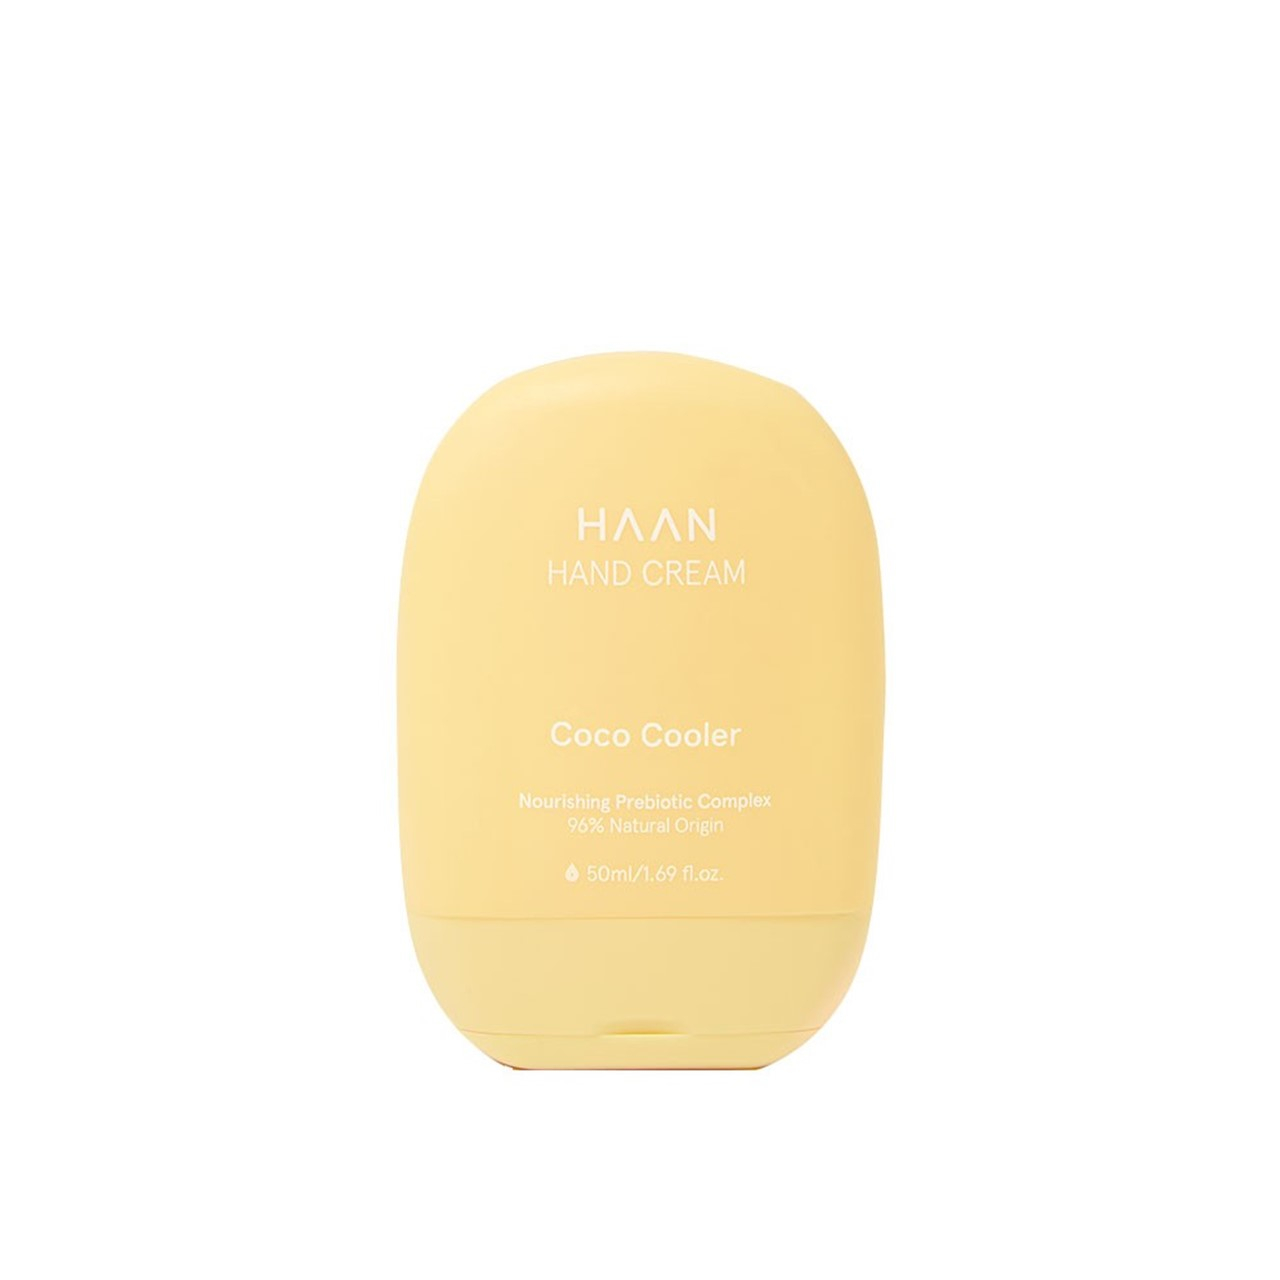 HAAN Coco Cooler Hand Cream 50ml